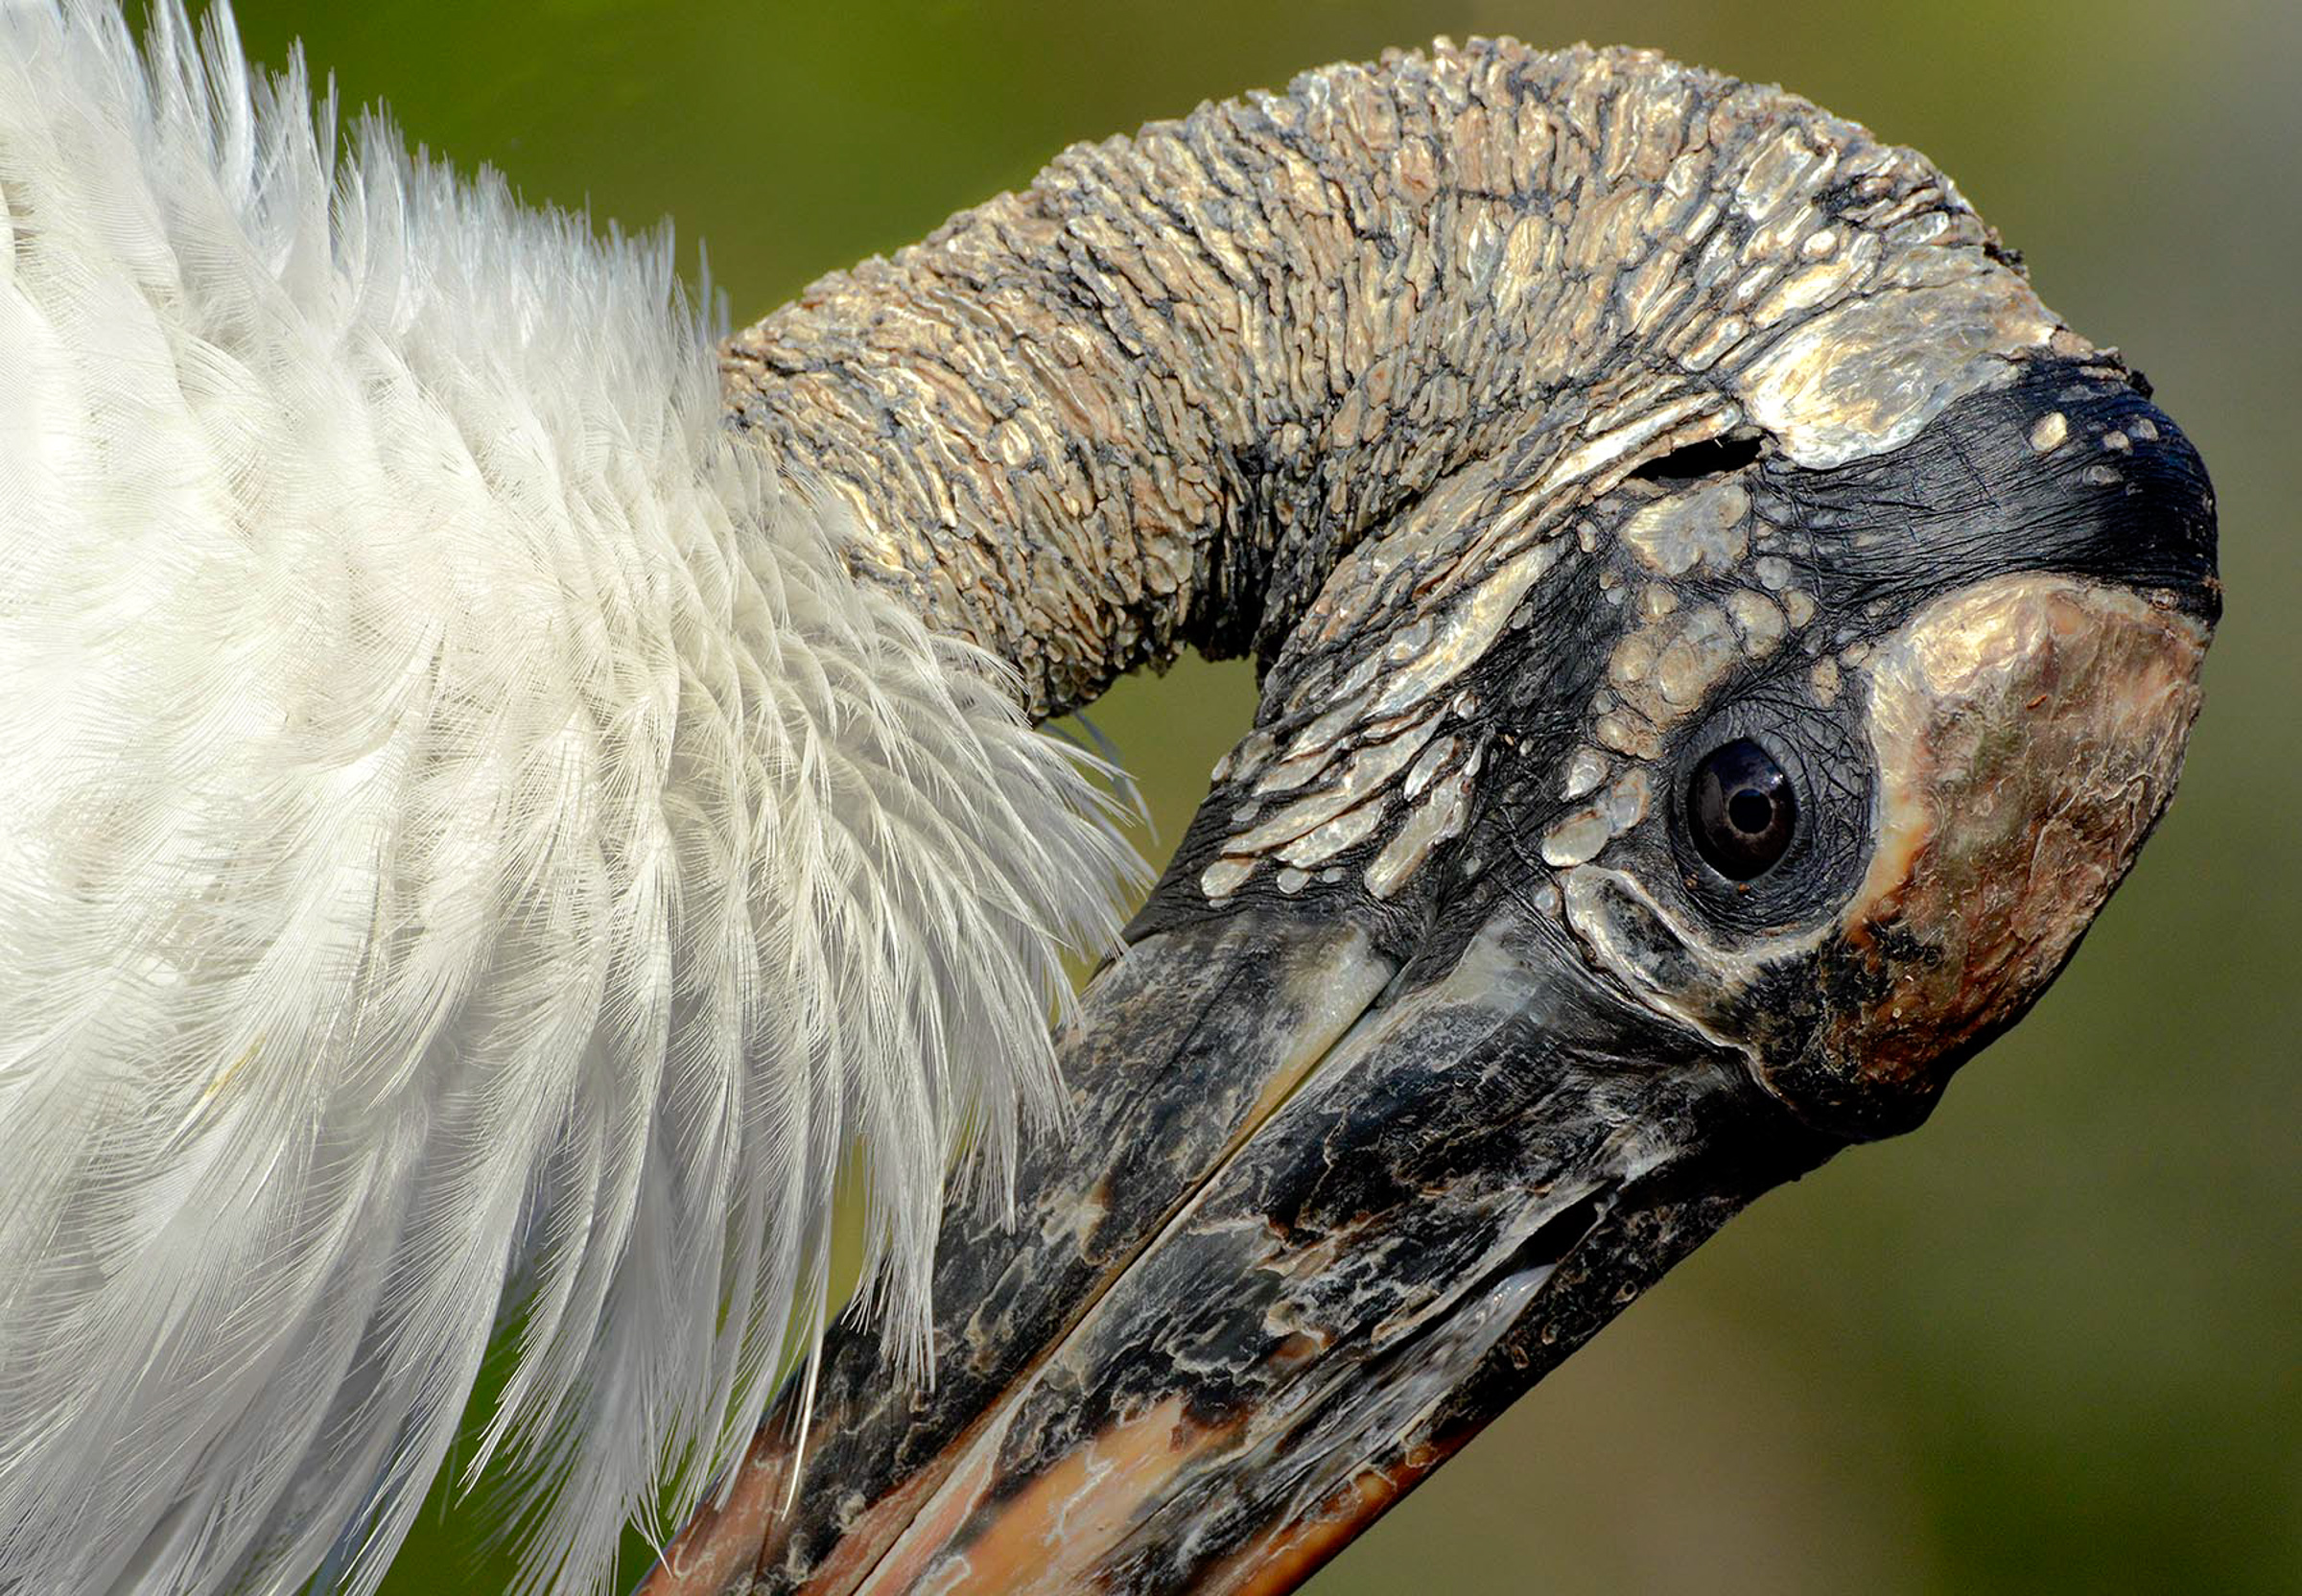 Wood Stork tucking its head onto its chest. Photo: Karen Mason/Audubon Photography Awards.